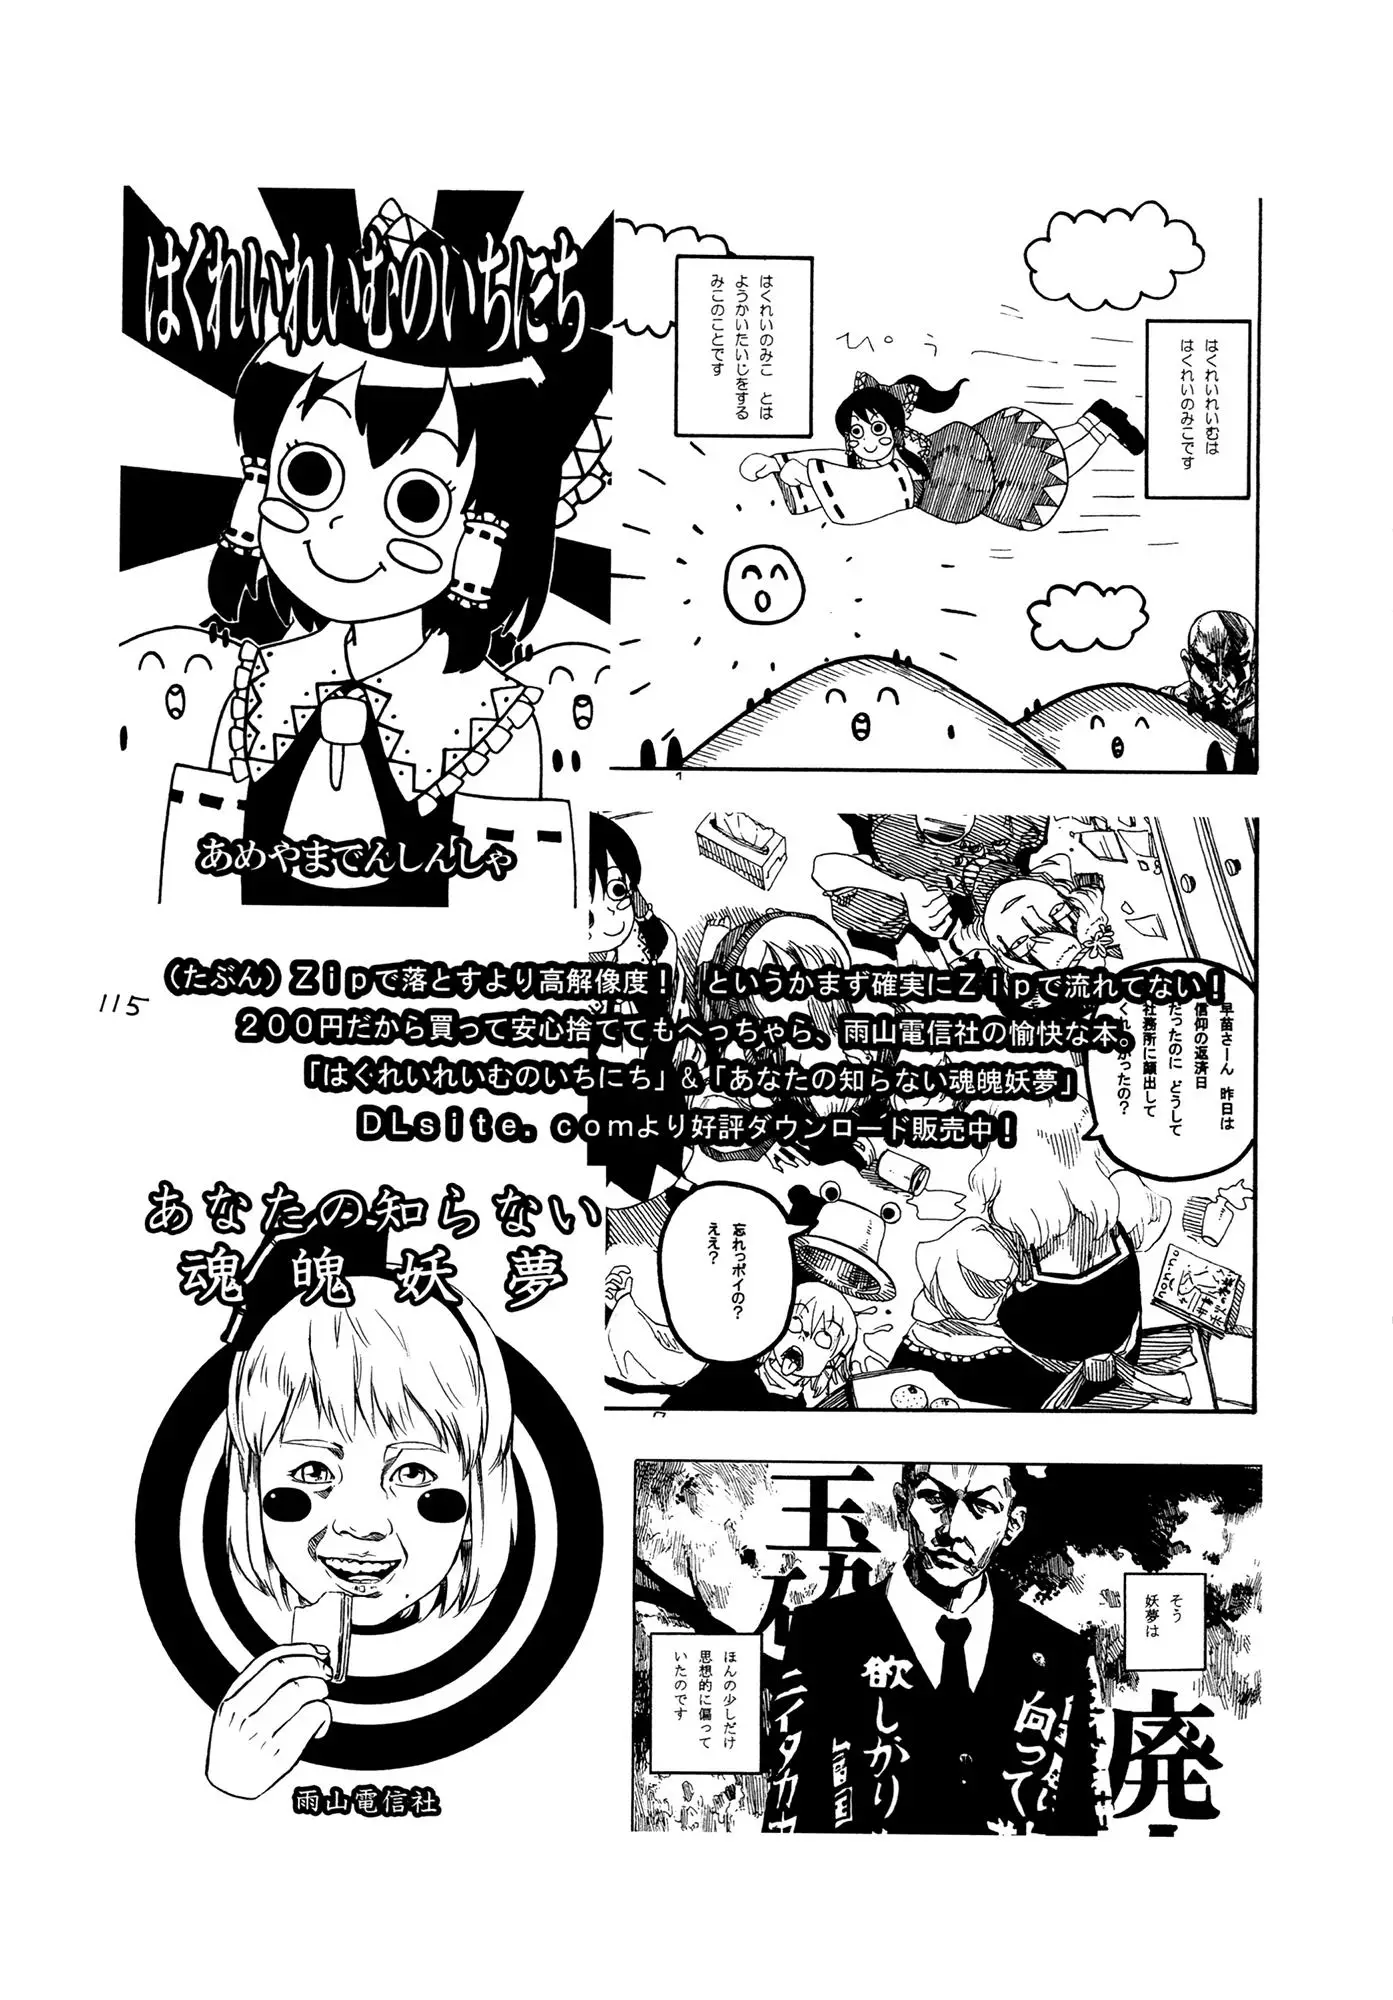 Touhou - Rainmaker (Doujinshi) - 3 page 115-9a615cdc